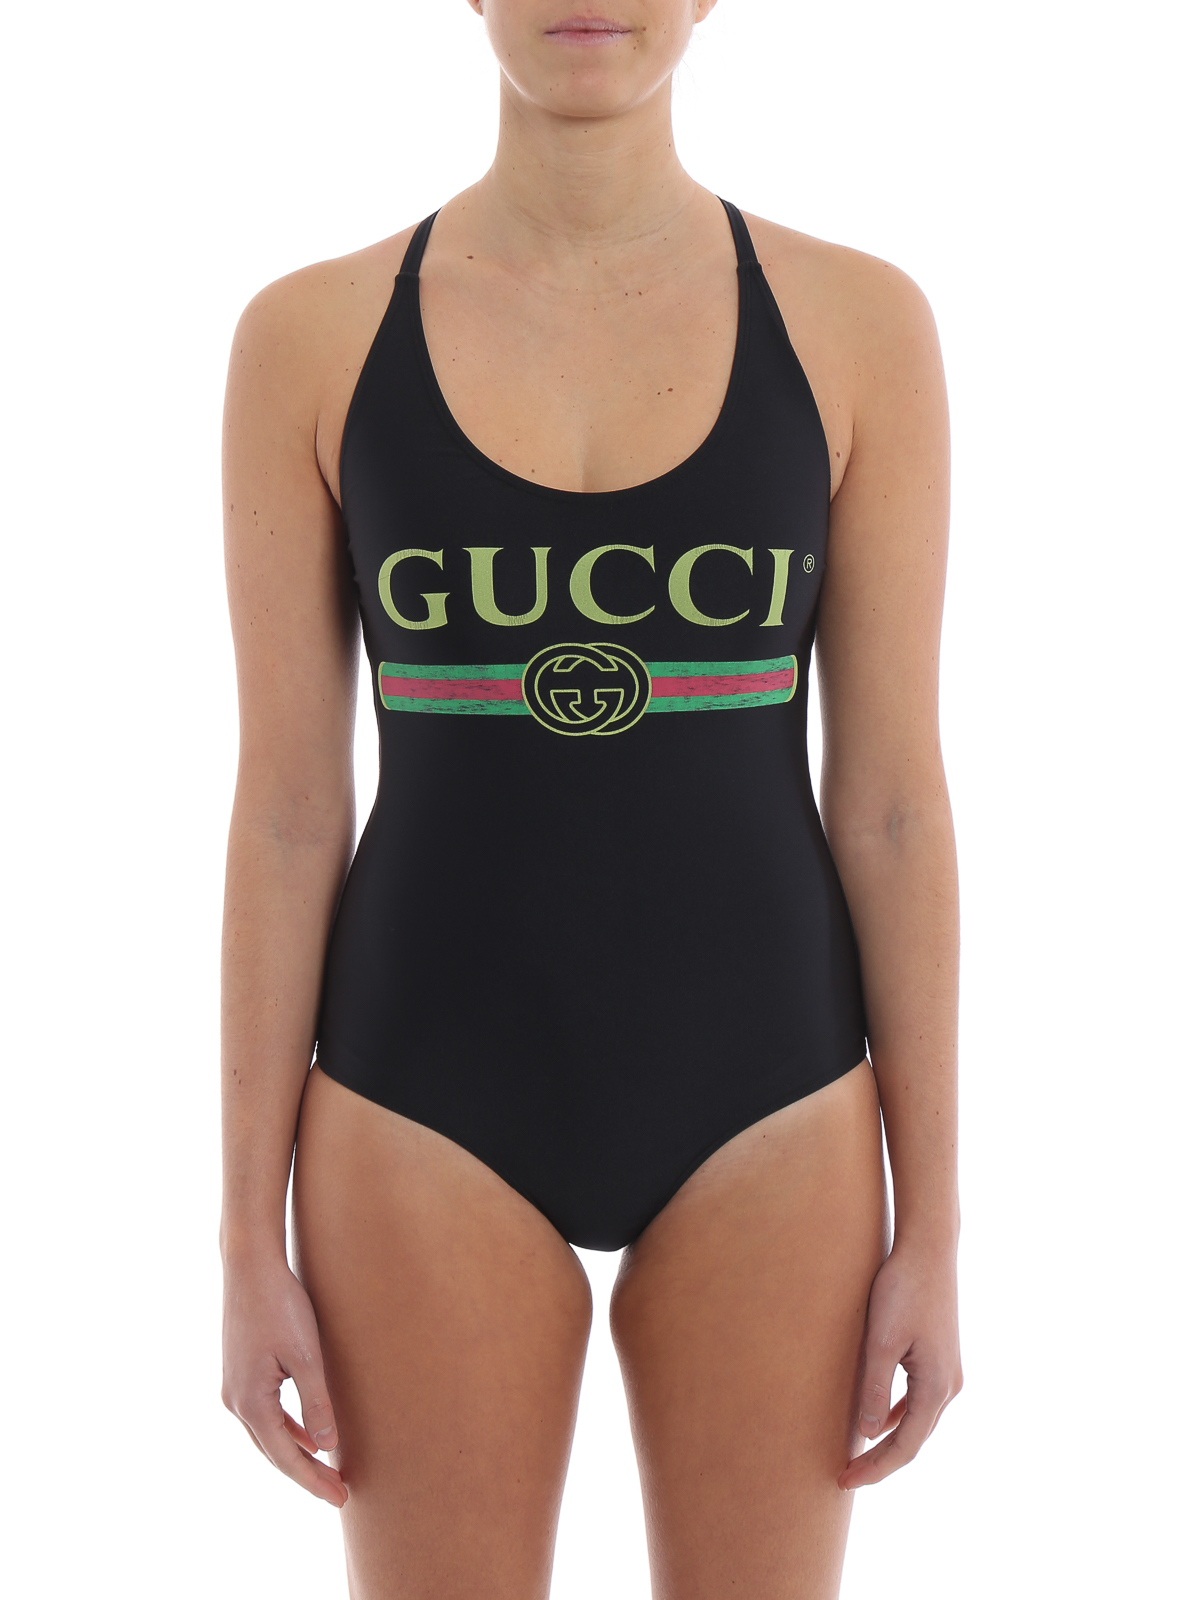 ワンピース Gucci - ワンピース - 黒 - 501899XJANM1082